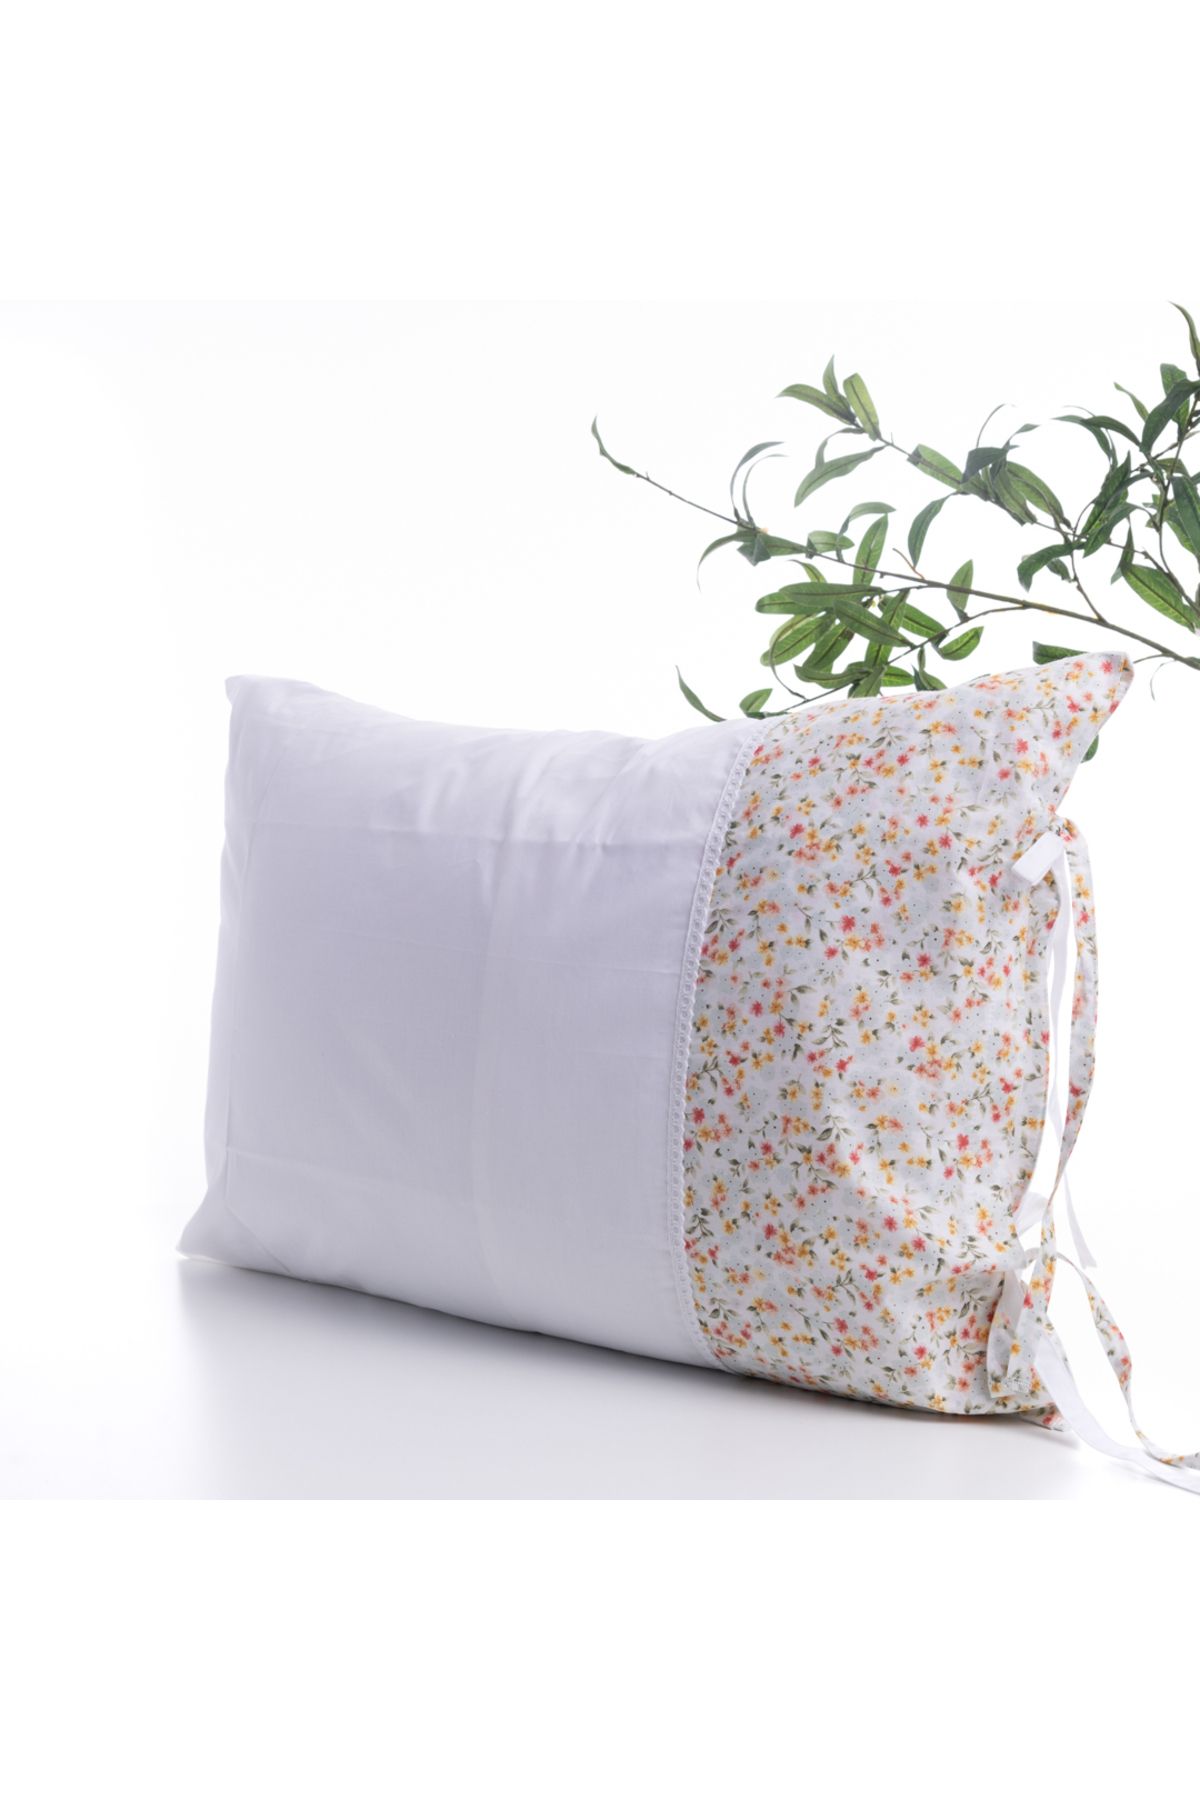 Bimotif Çiçek desenli 2 adet yastık kılıfı, 50x70 cm, Su Yeşili